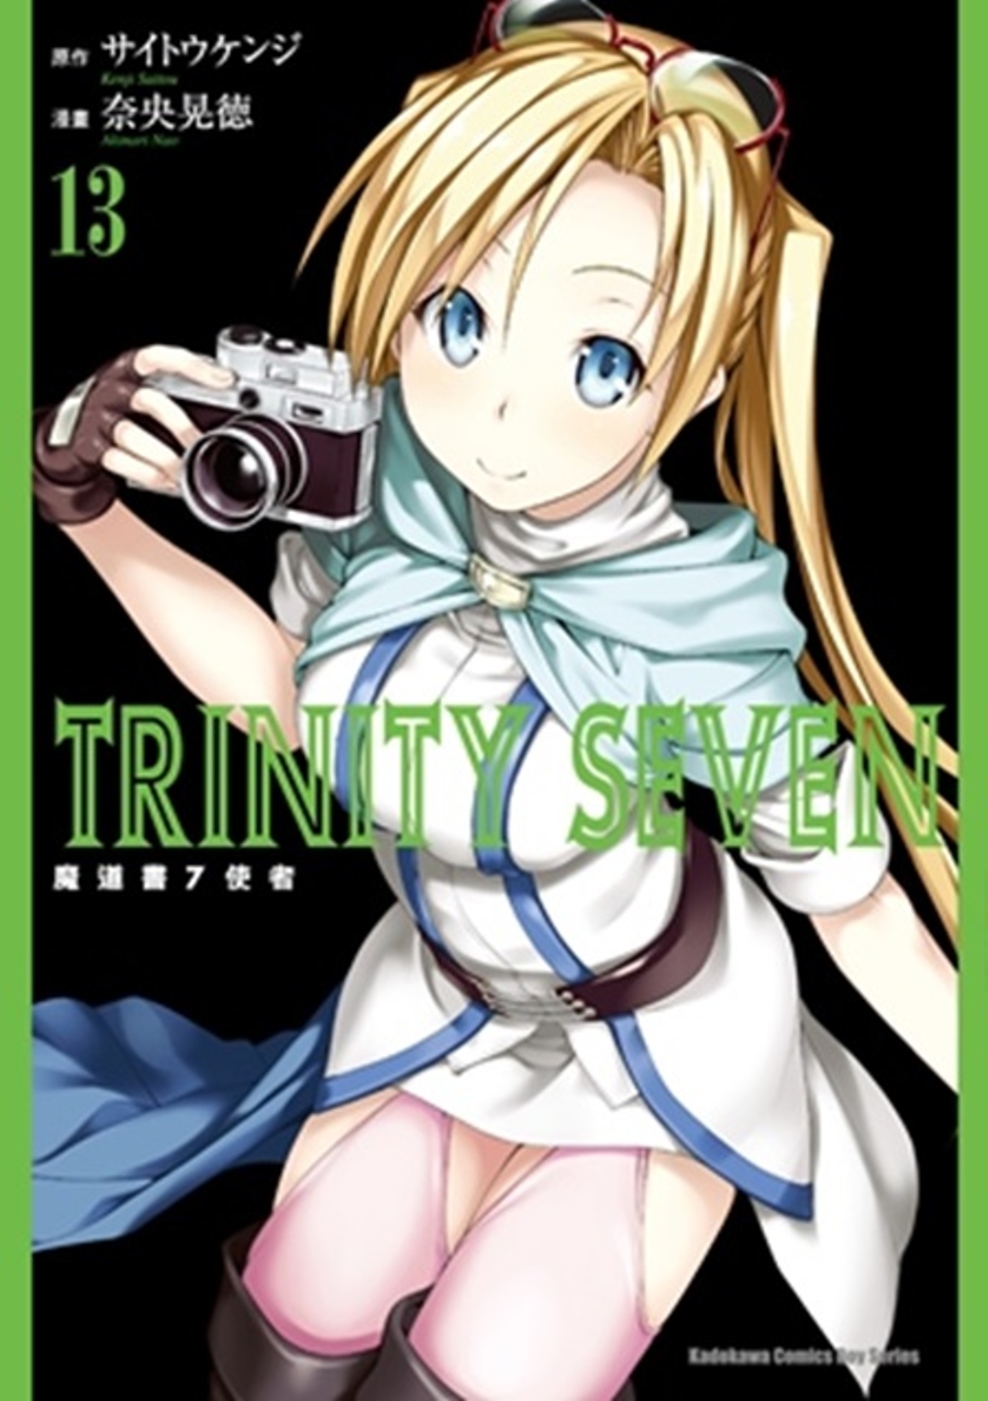 TRINITY SEVEN 魔道書7使者 (13)(限台灣)